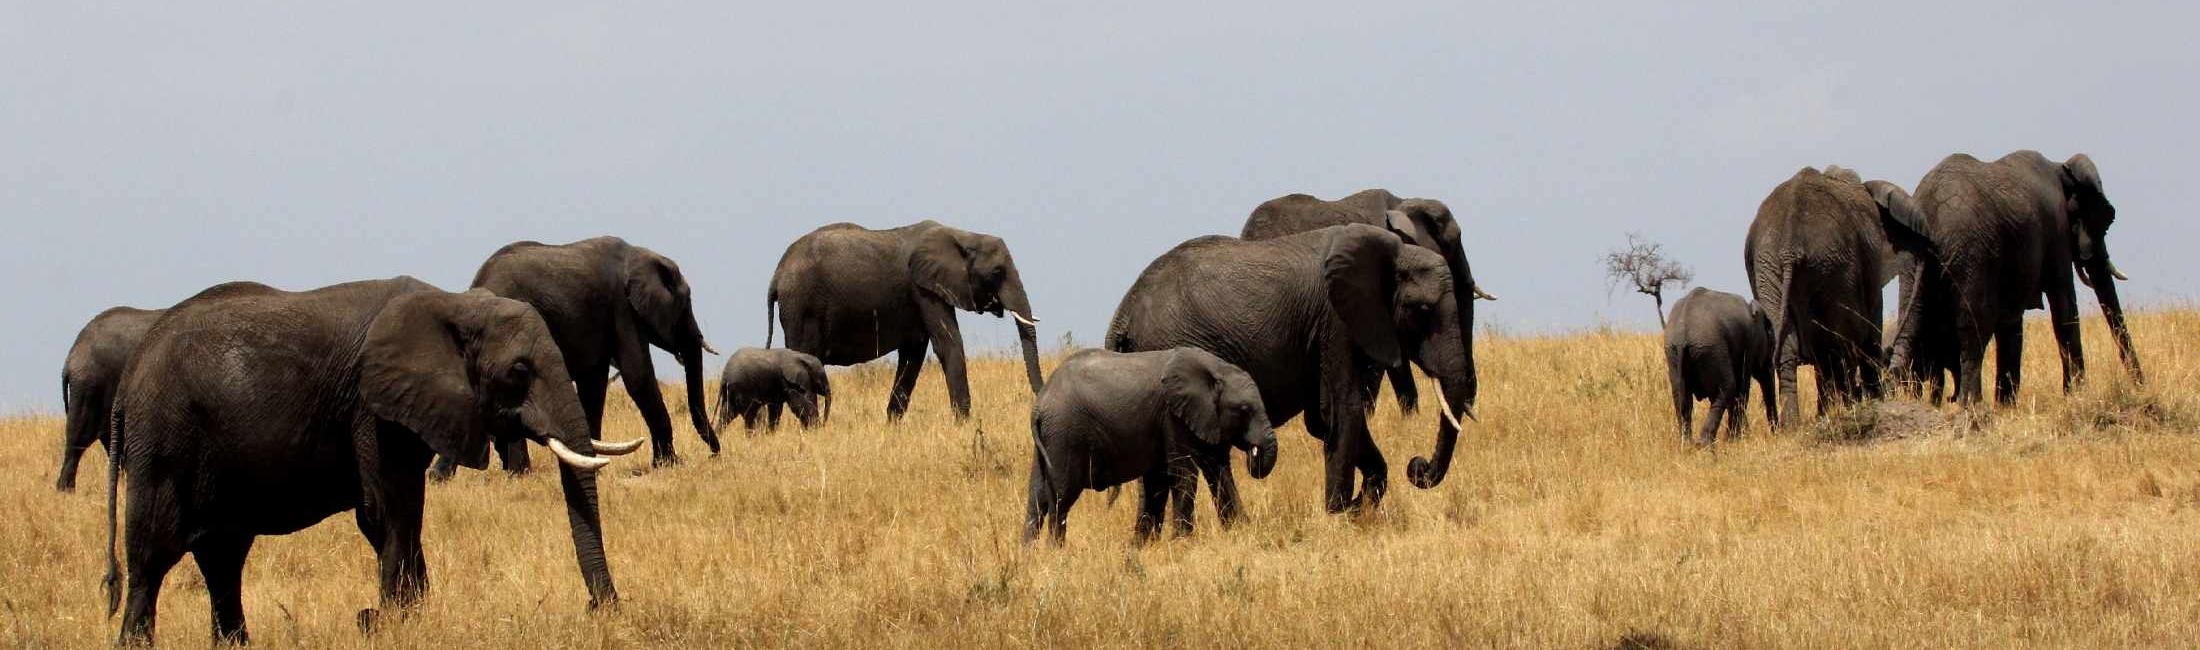 Troop of Elephants (Queen Elizabeth National Park)